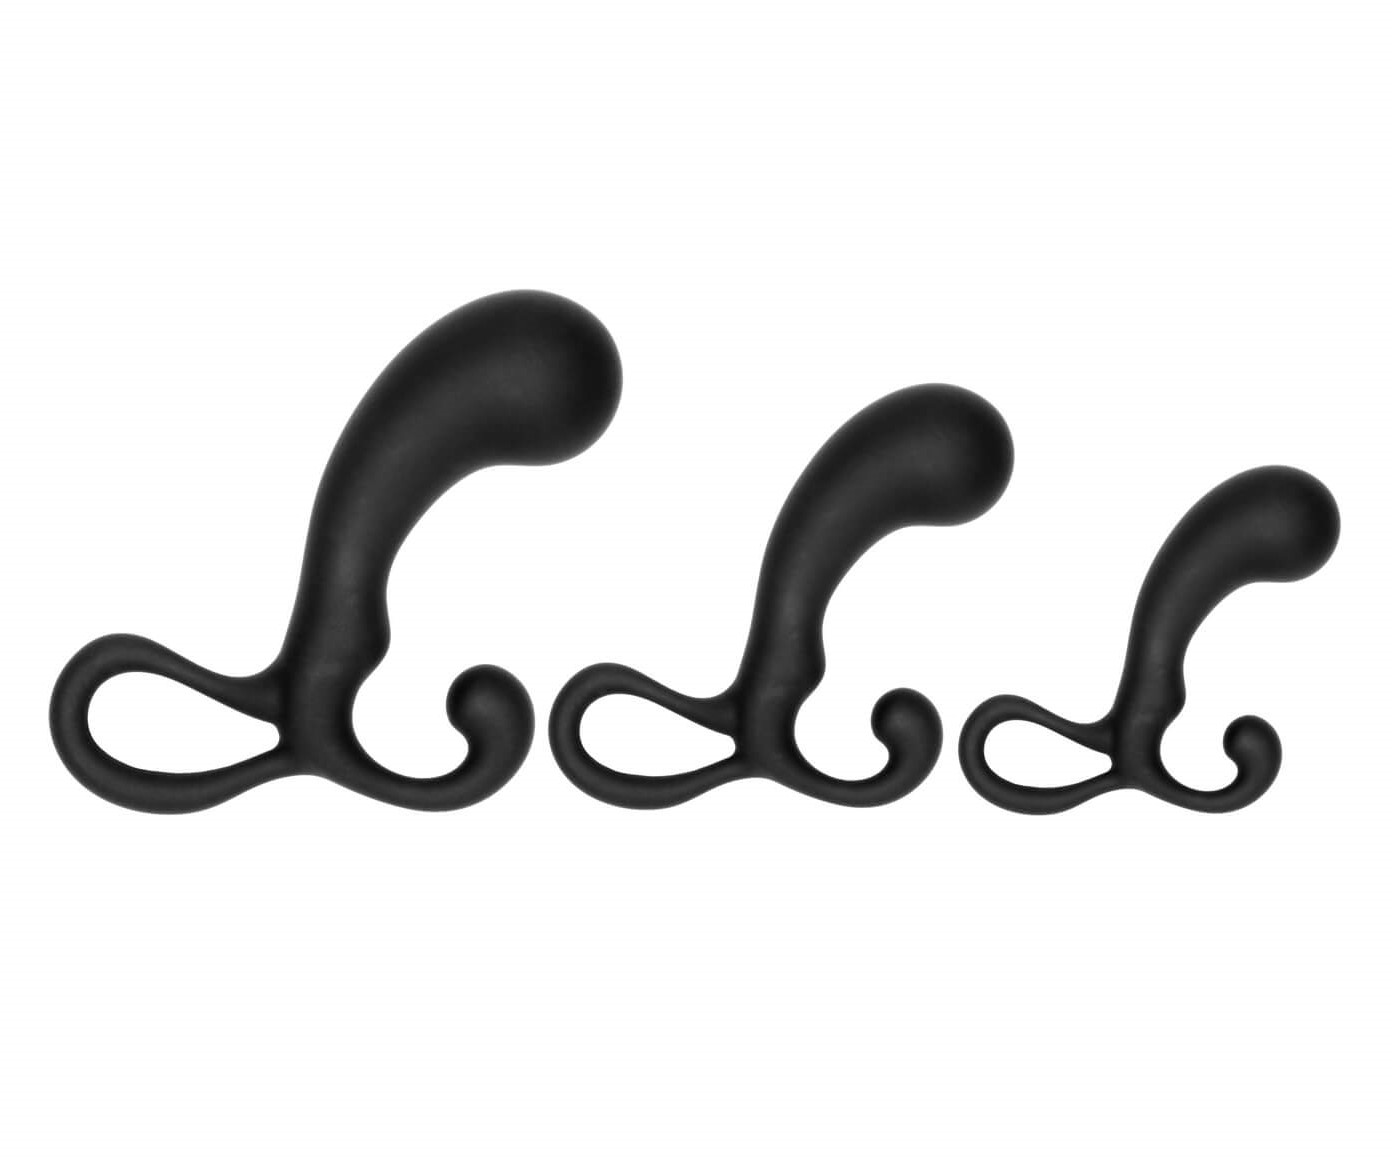 Sono - prosztataizgató dildó szett - 3 részes (fekete) kép